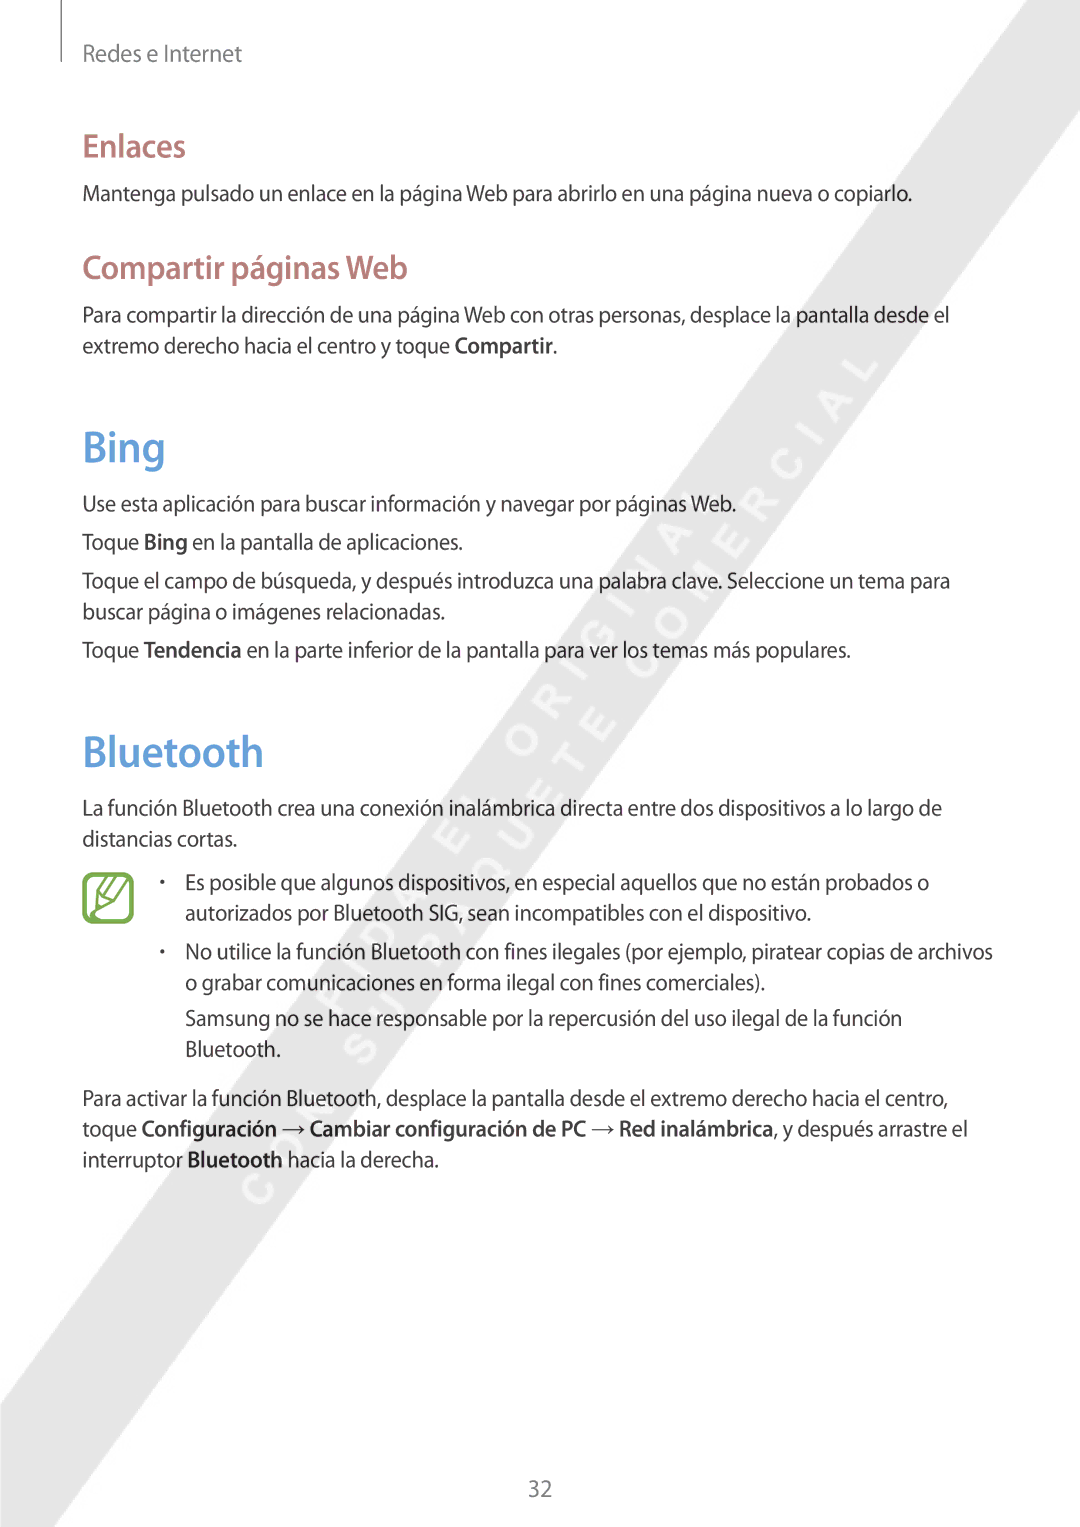 Samsung GT-P8510MSAPHE manual Bing, Bluetooth, Enlaces, Compartir páginas Web 